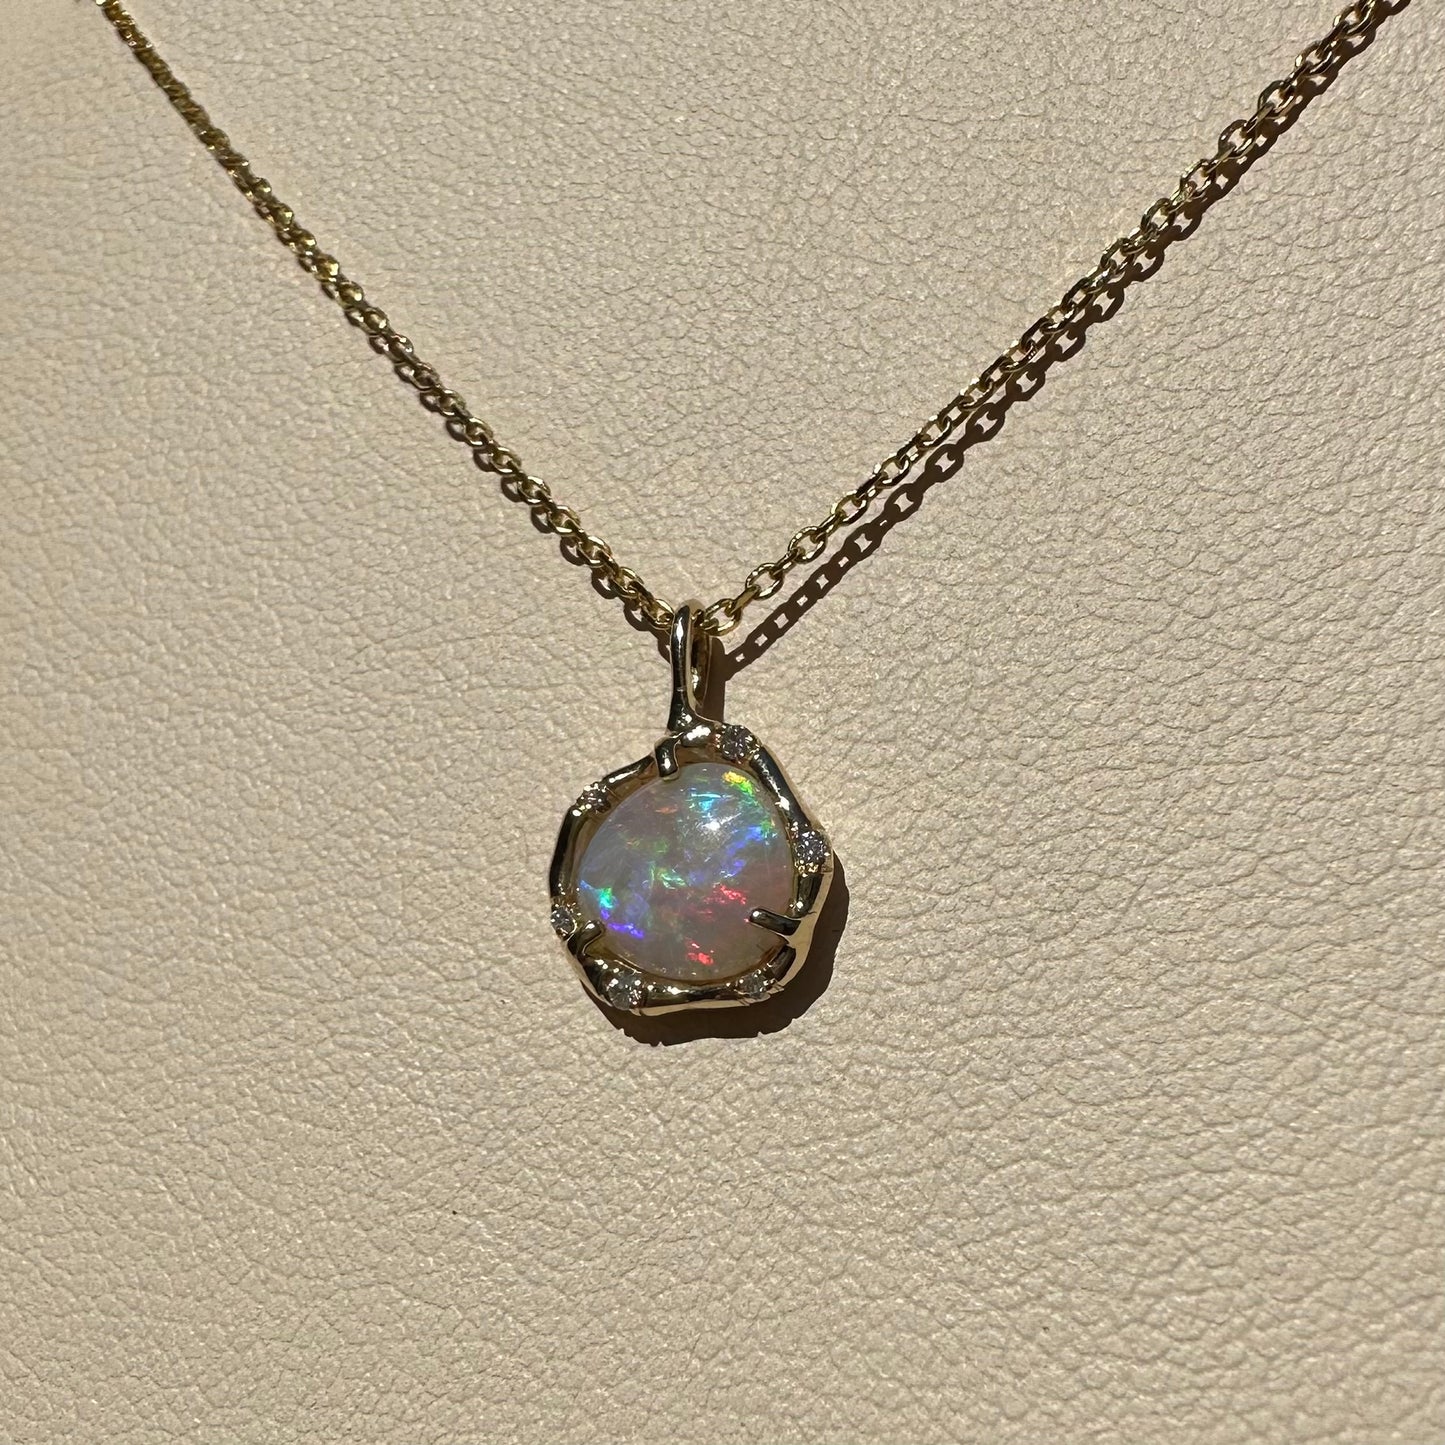 cosmic light necklace - australian opal